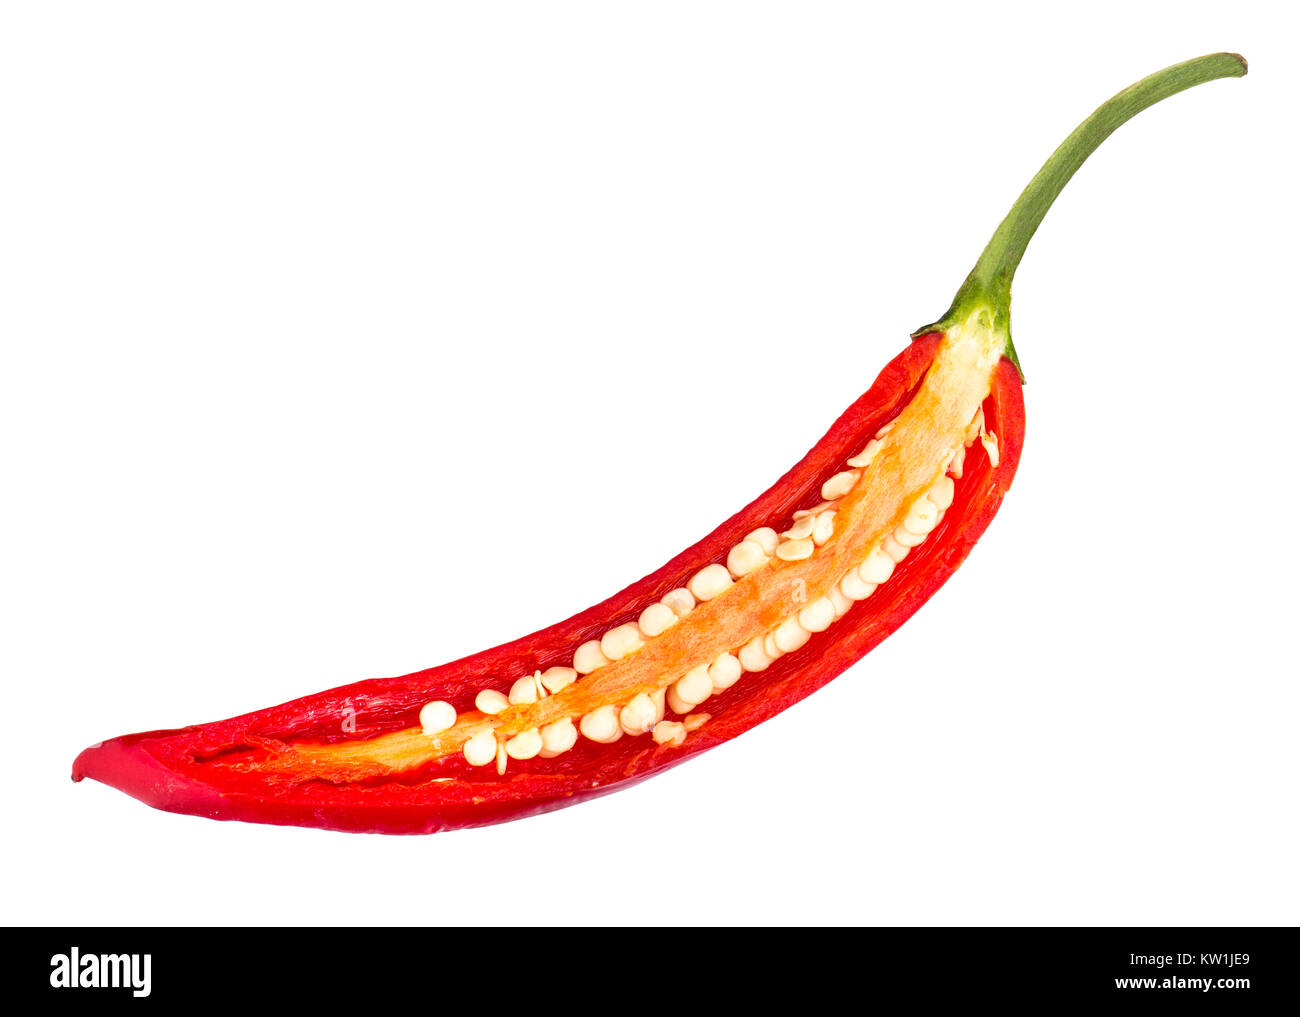 https://c8.alamy.com/comp/KW1JE9/chili-pepper-slice-KW1JE9.jpg